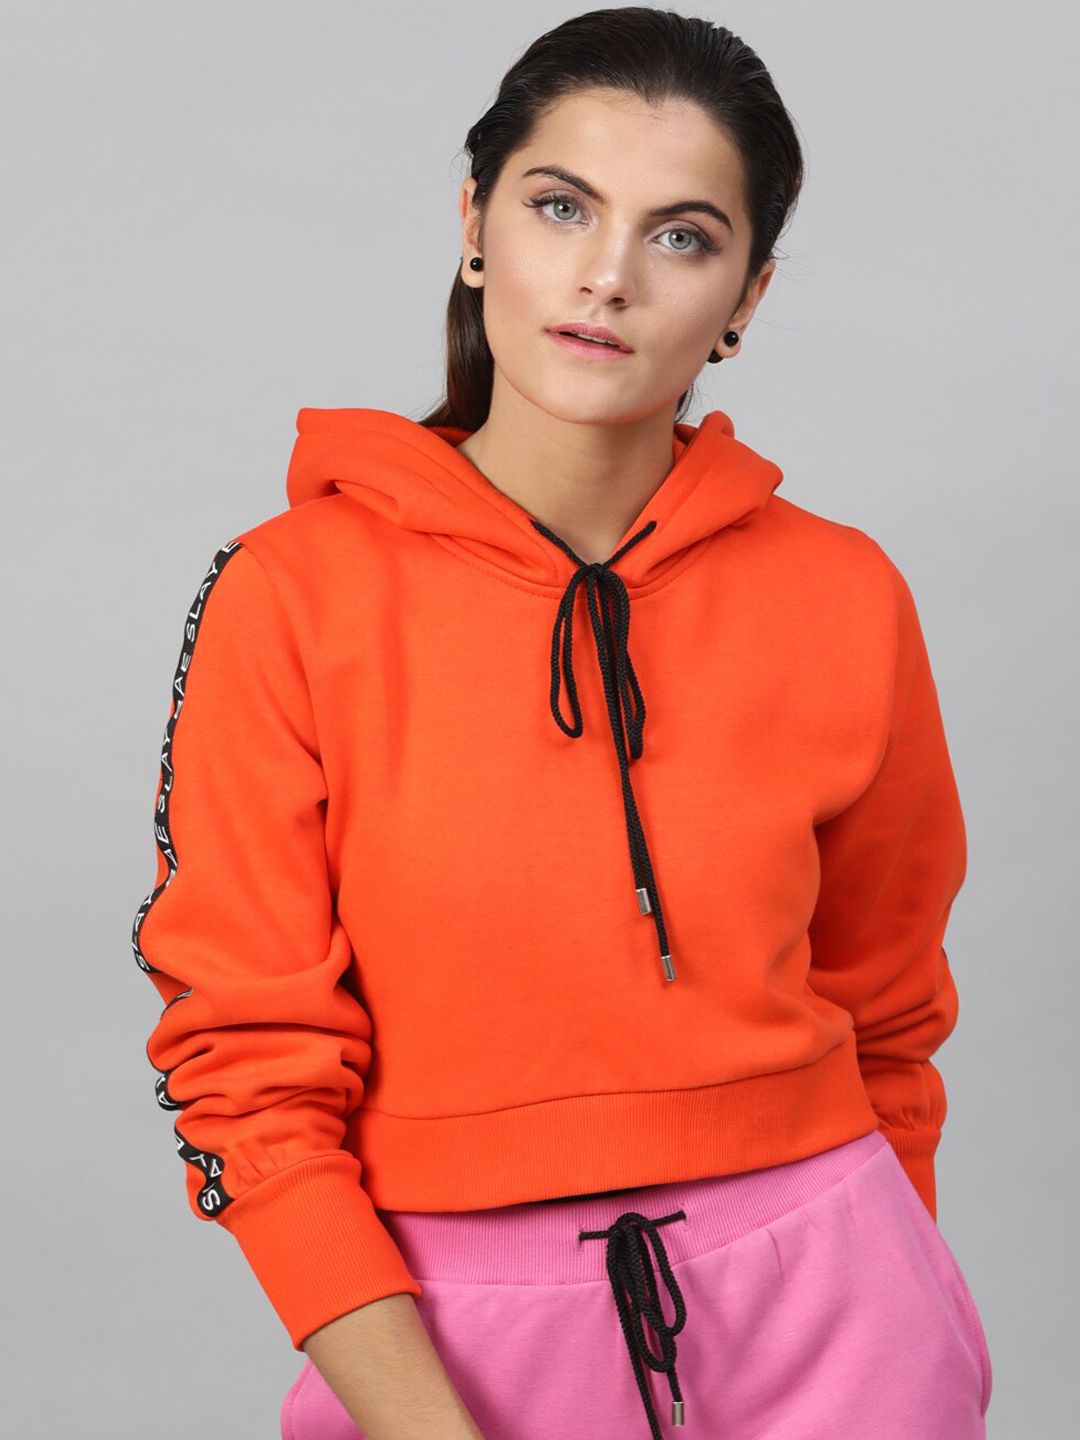 STREET 9 Women Orange & Black Solid Hooded Sweatshirt Price in India